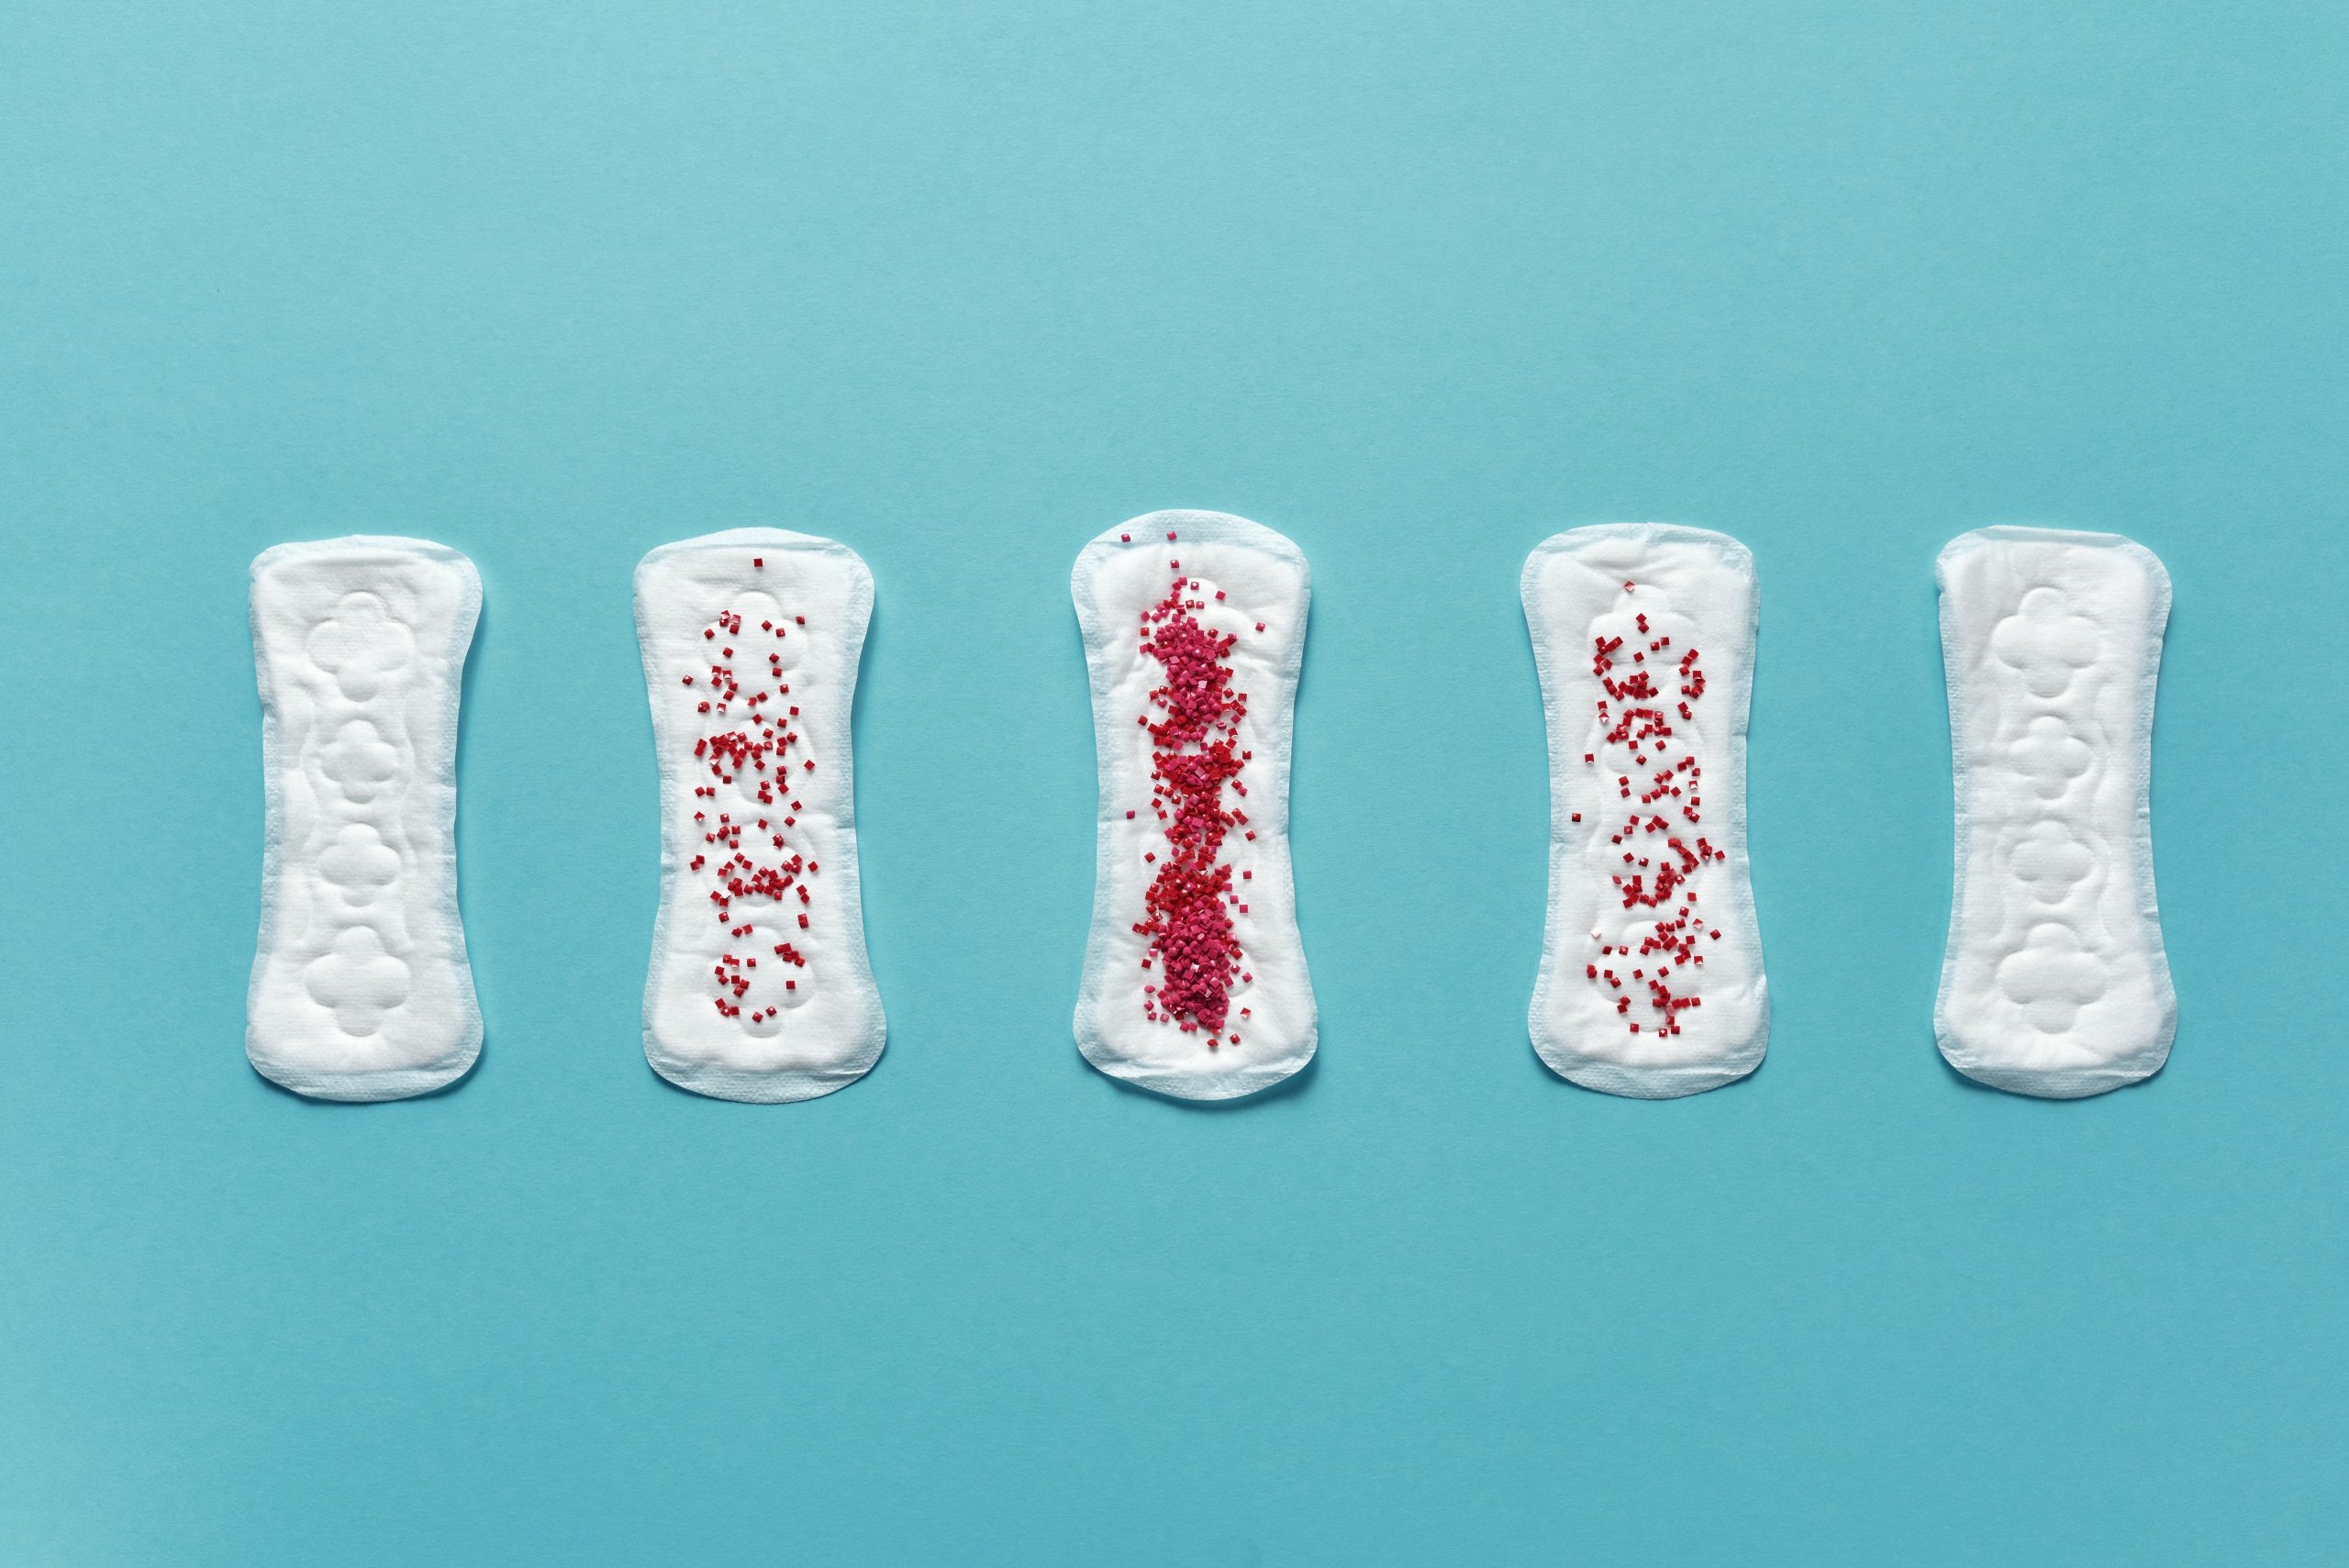 Cinco compresa sanitaria, que grauduan la cantidad de sangre. Simluando fases de la menstruacion